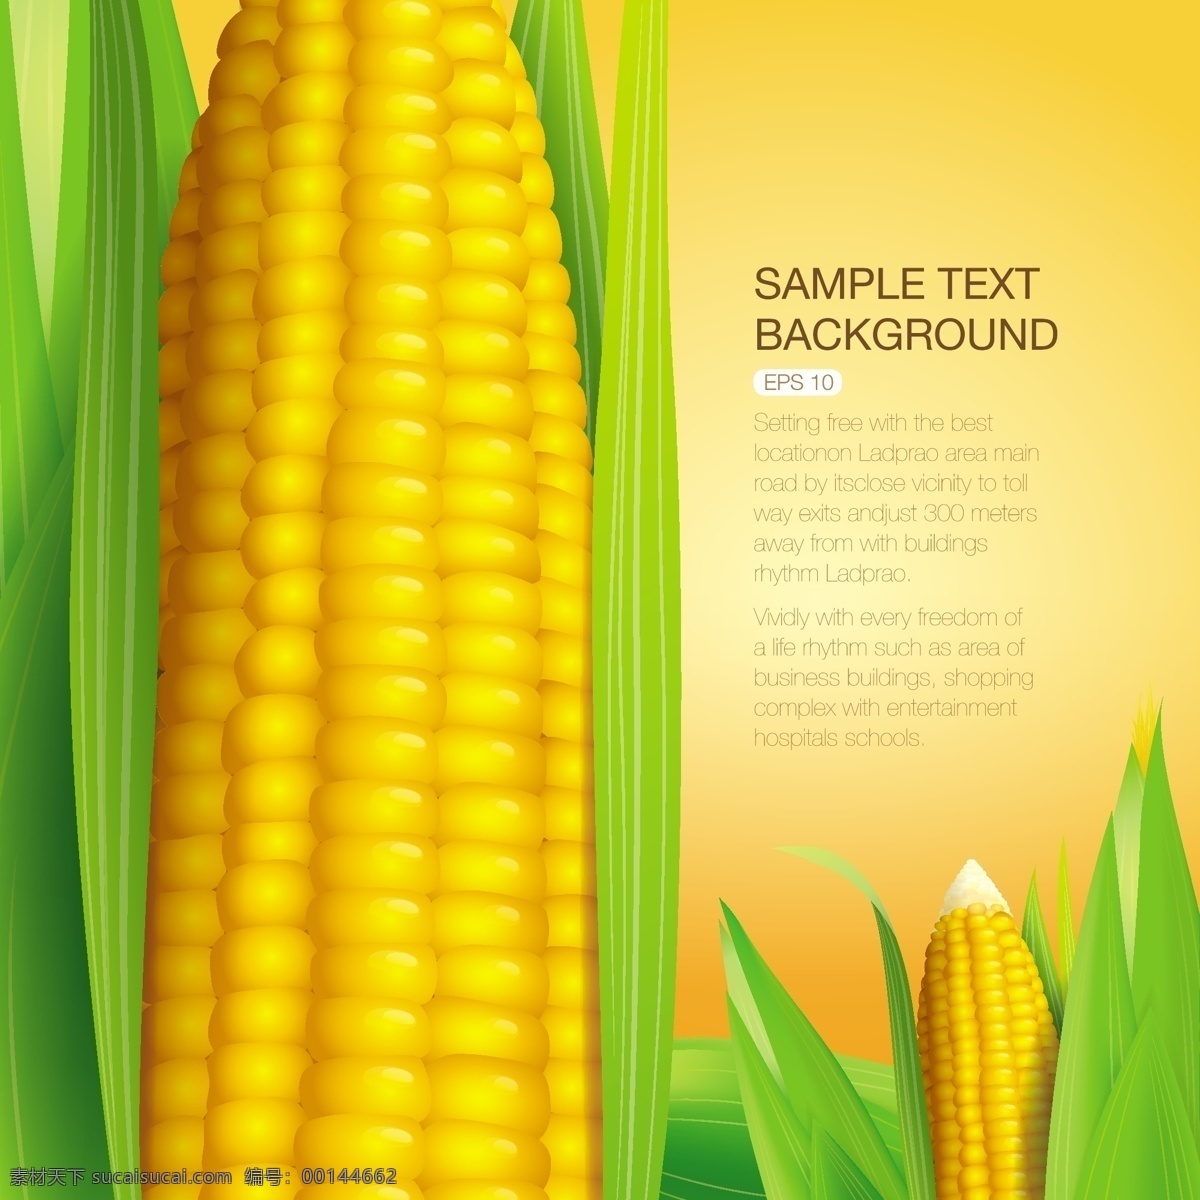 玉米海报招贴 玉米 金黄 绿叶 杂粮 食物 矢量素材 矢量